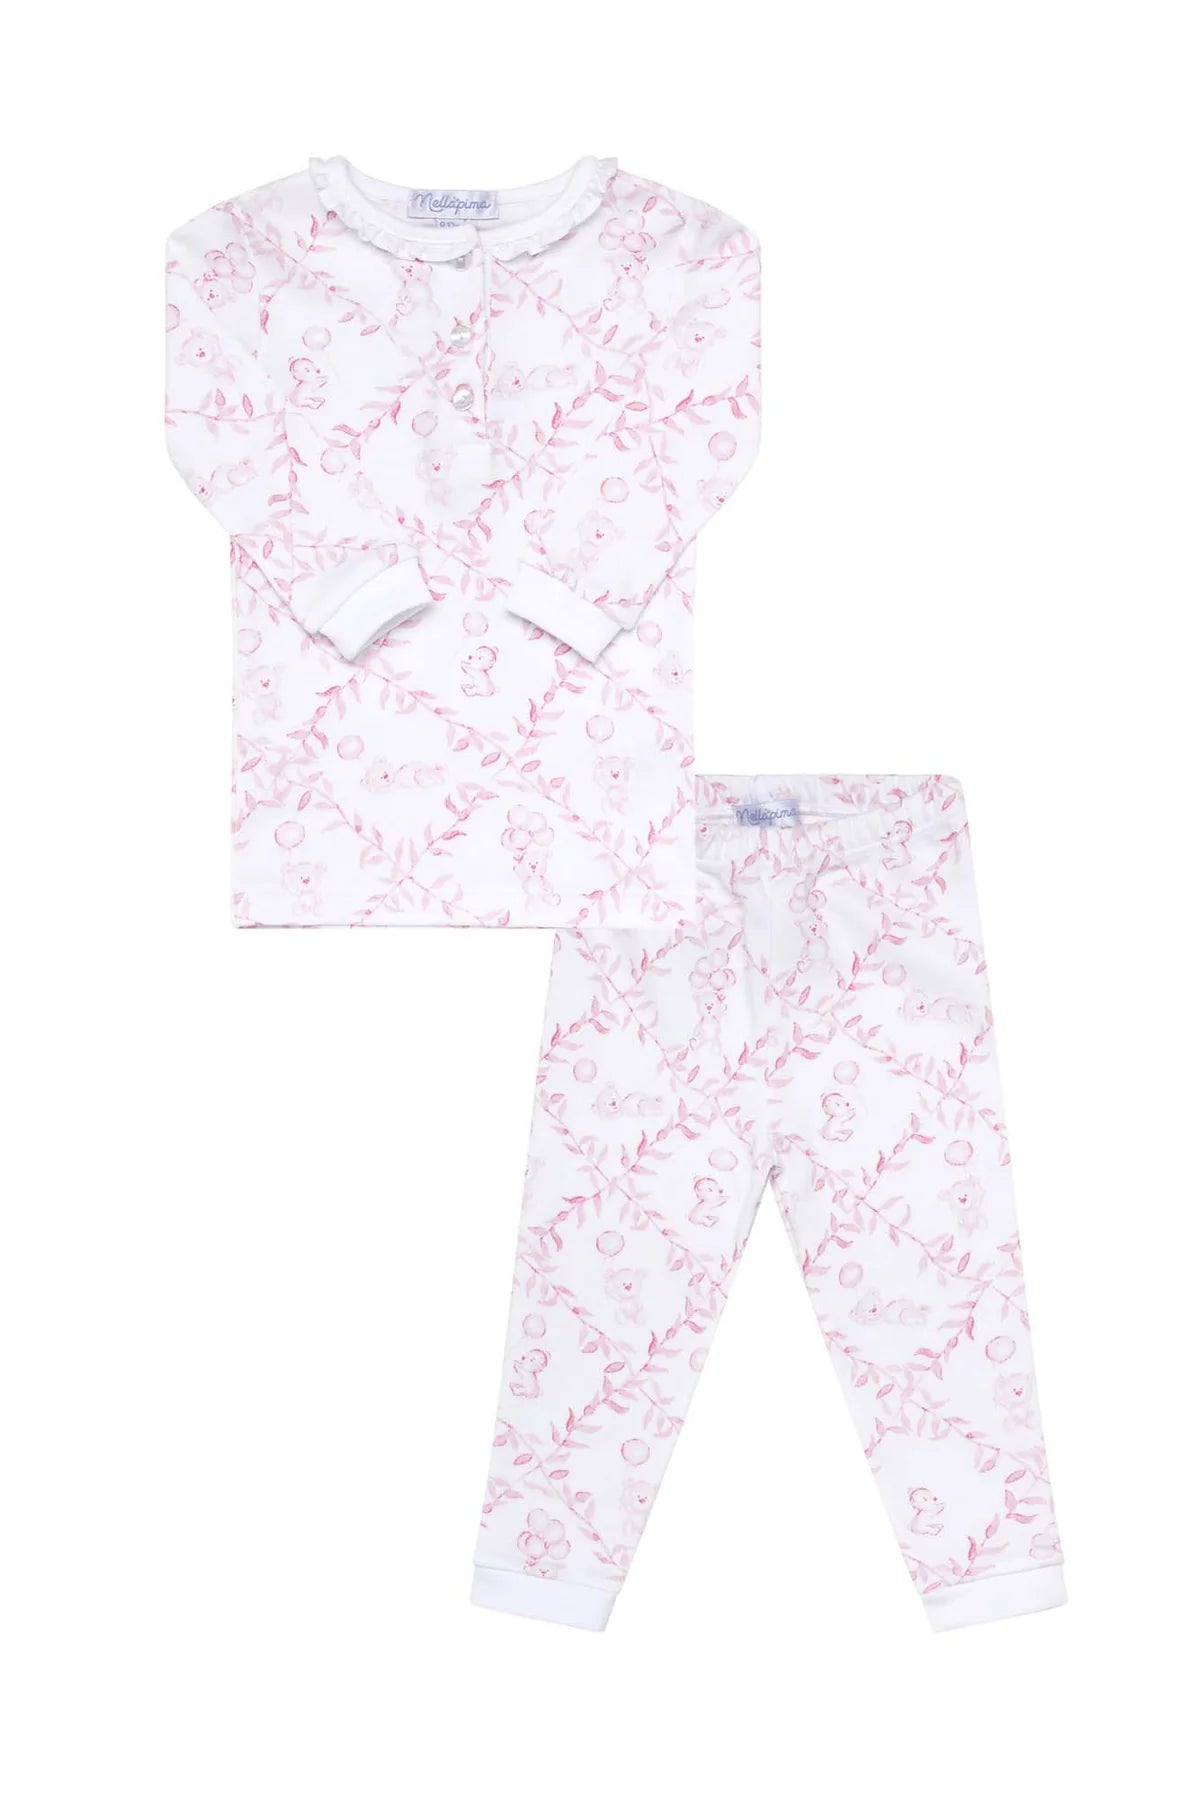 Nella Pima Pink Toile Baby Pajamas